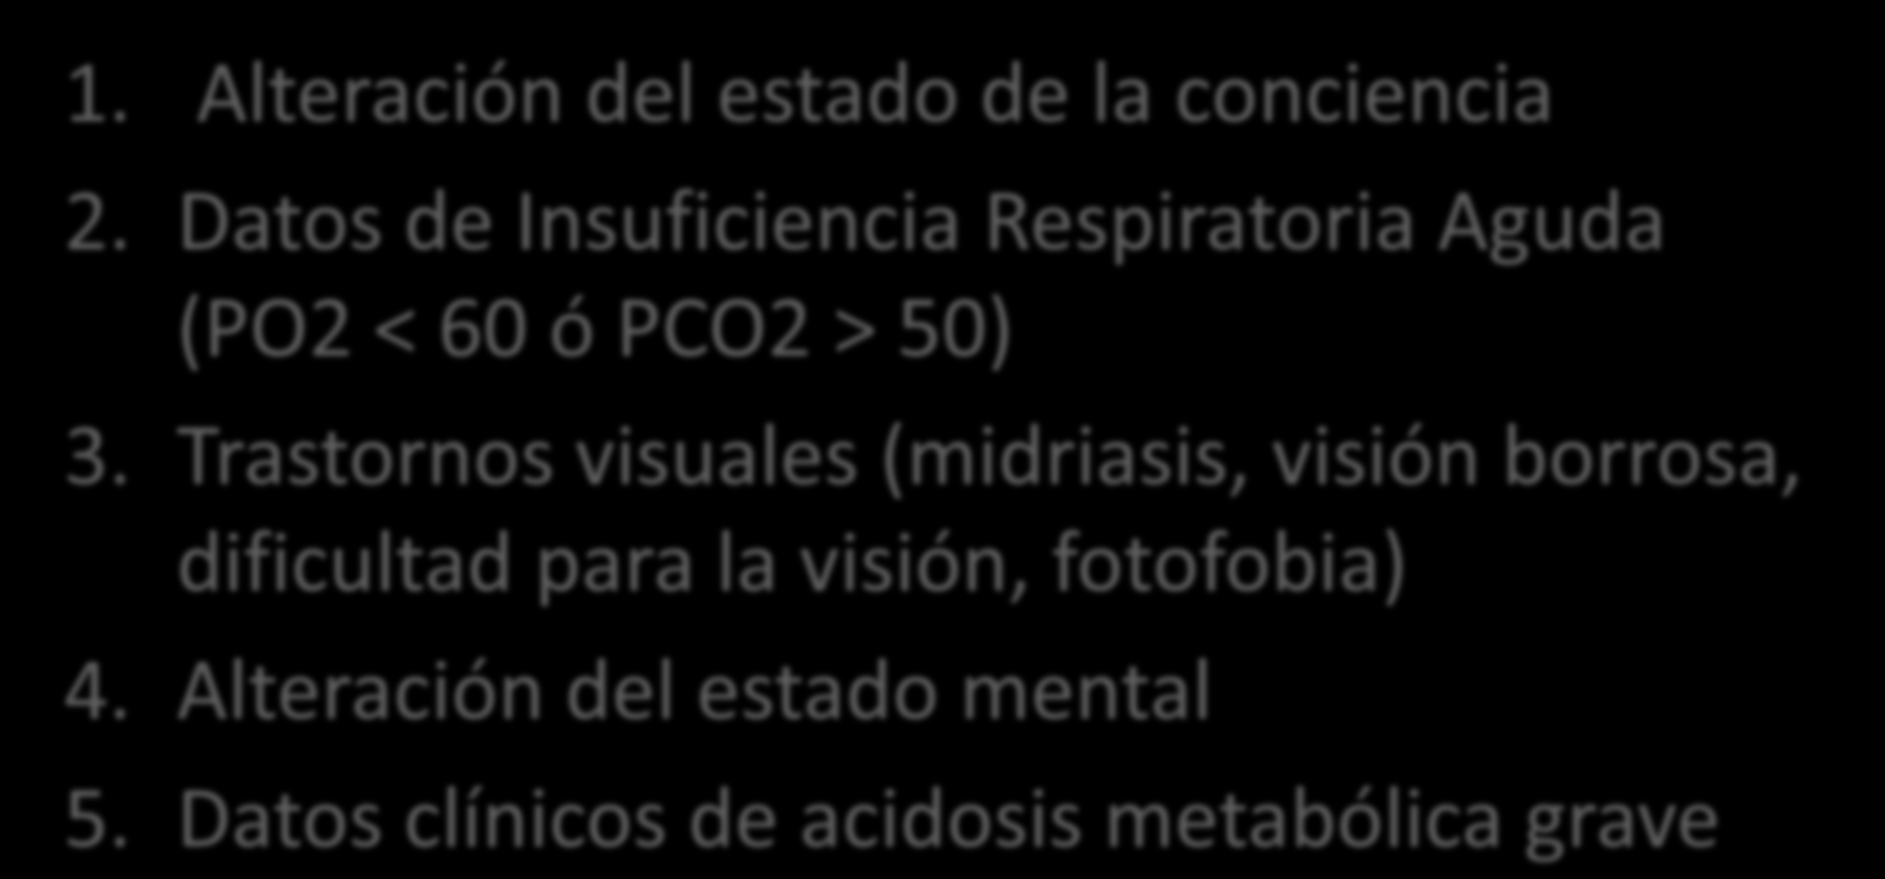 Criterios de ingreso en UCI 1. Alteración del estado de la conciencia 2. Datos de Insuficiencia Respiratoria Aguda (PO2 < 60 ó PCO2 > 50) 3.